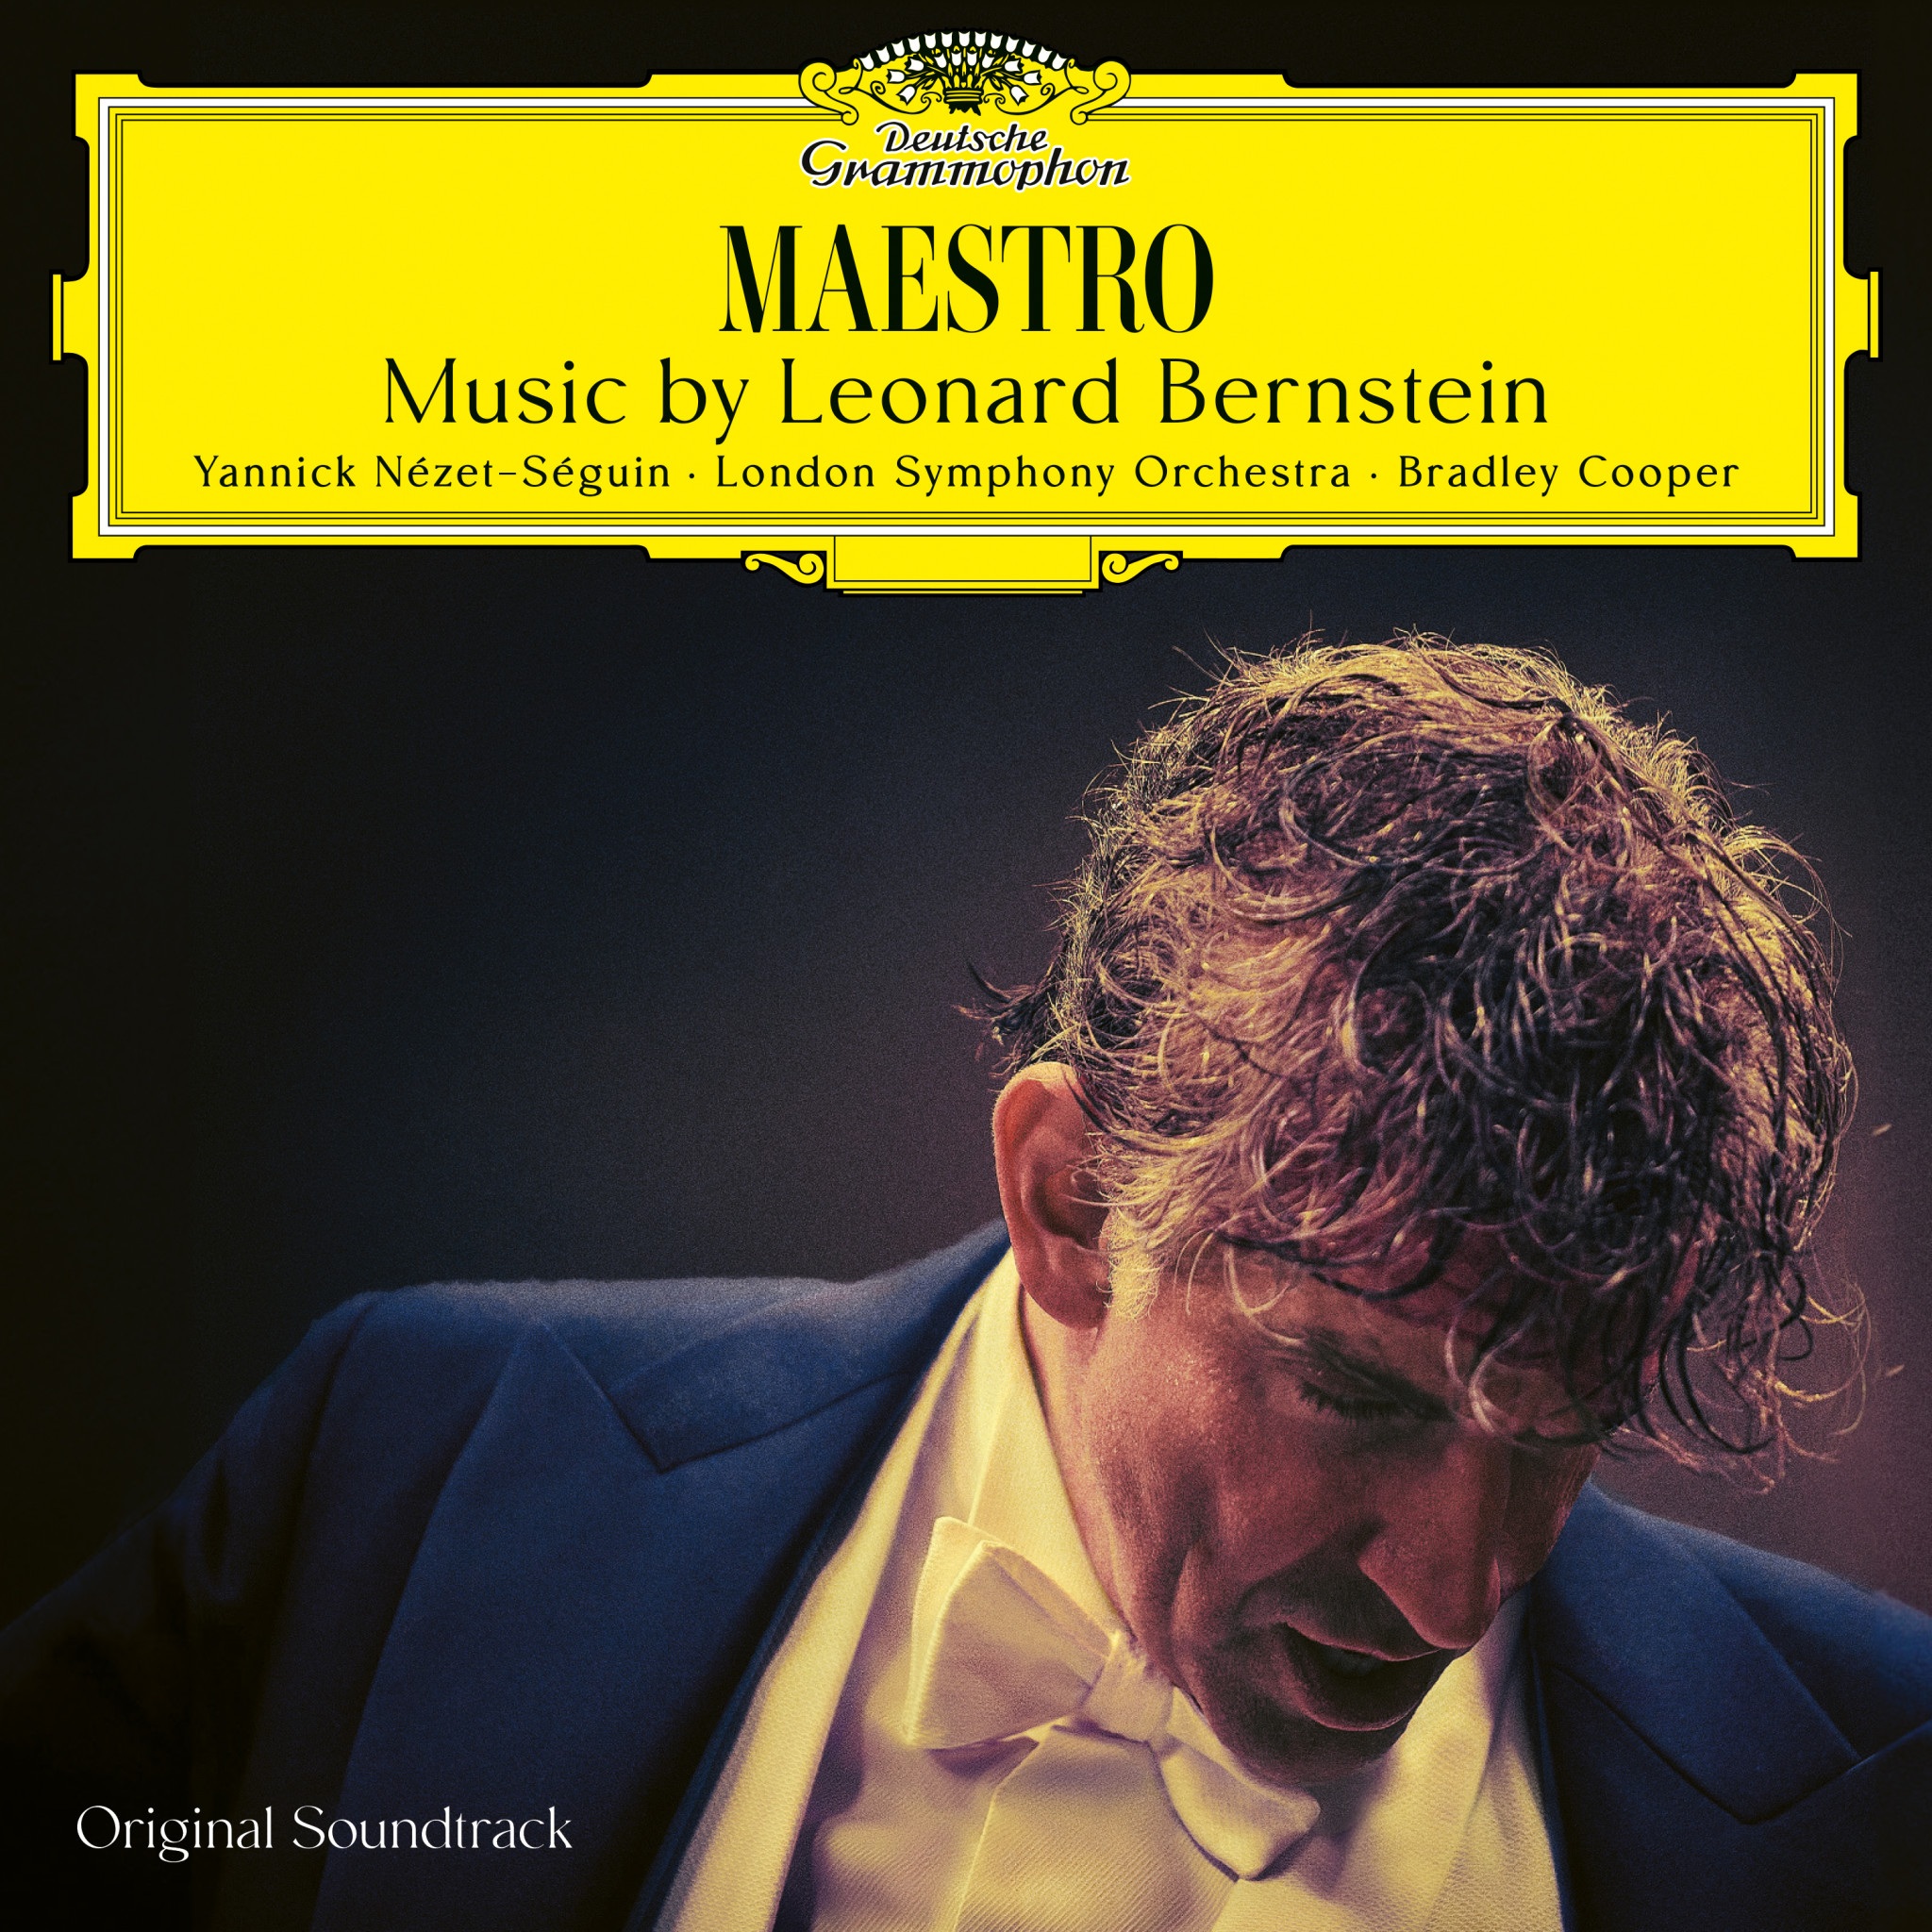  Maestro: Music by Leonard Bernstein 